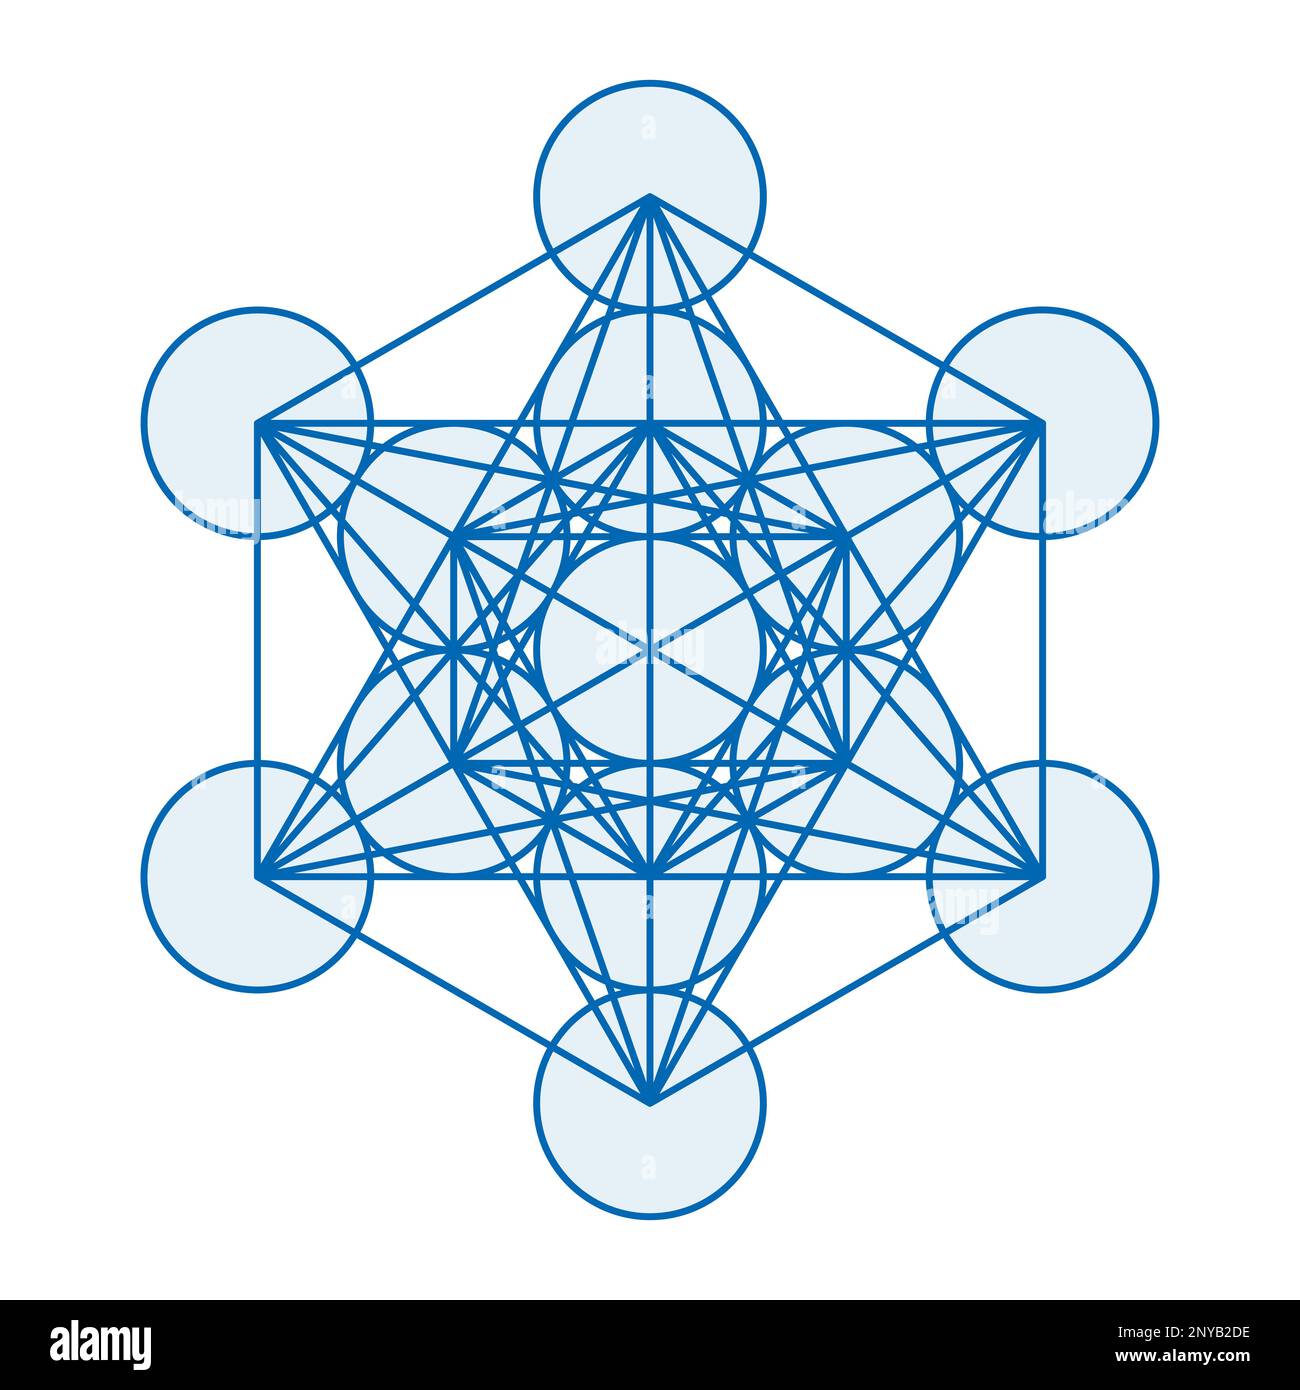 Cube de métatrons bleus. Un symbole mystique, dérivé de la fleur de la vie. Tous les centres des treize cercles sont reliés par des lignes droites. Banque D'Images